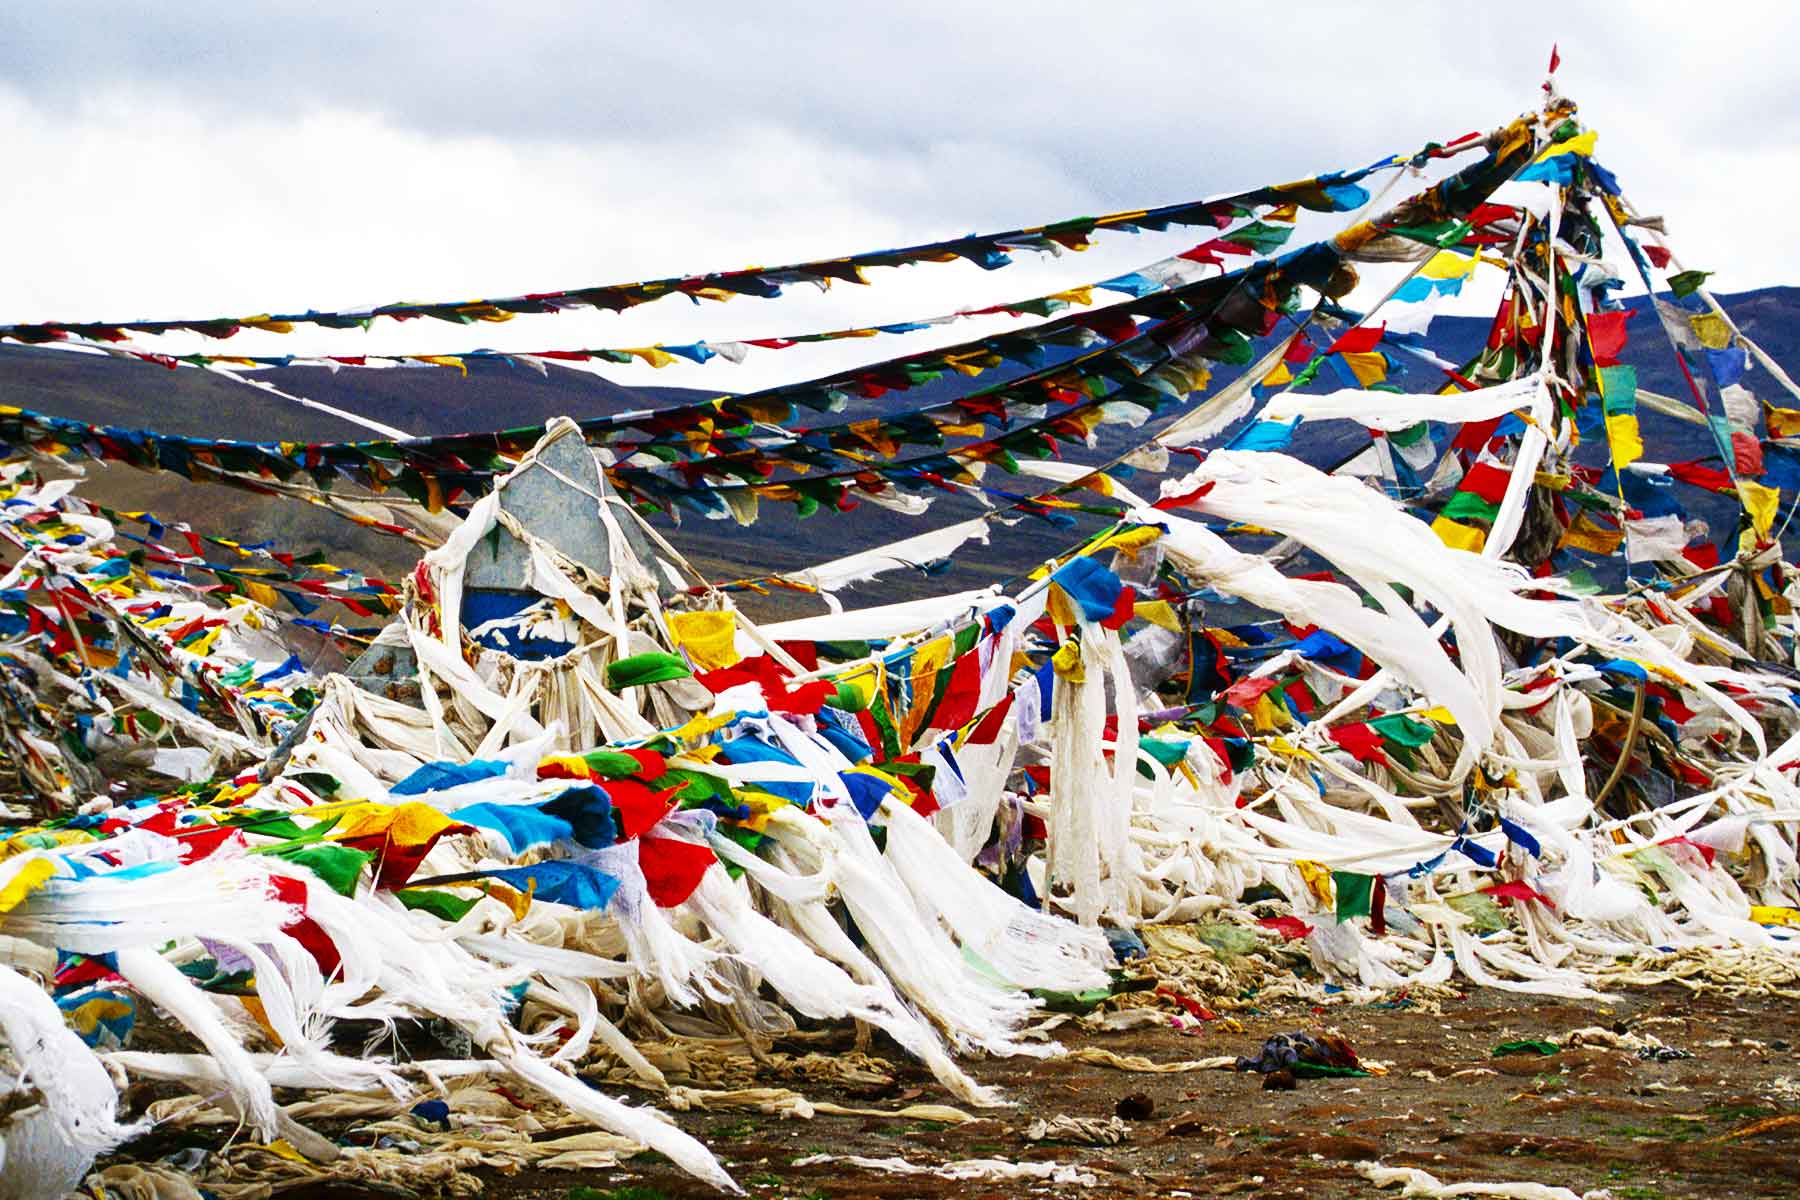 Prayer flags at a mountain pass | Mount Everest Tibet Photo Journal | Surf Doctor Steven Martin | Study Abroad Journal